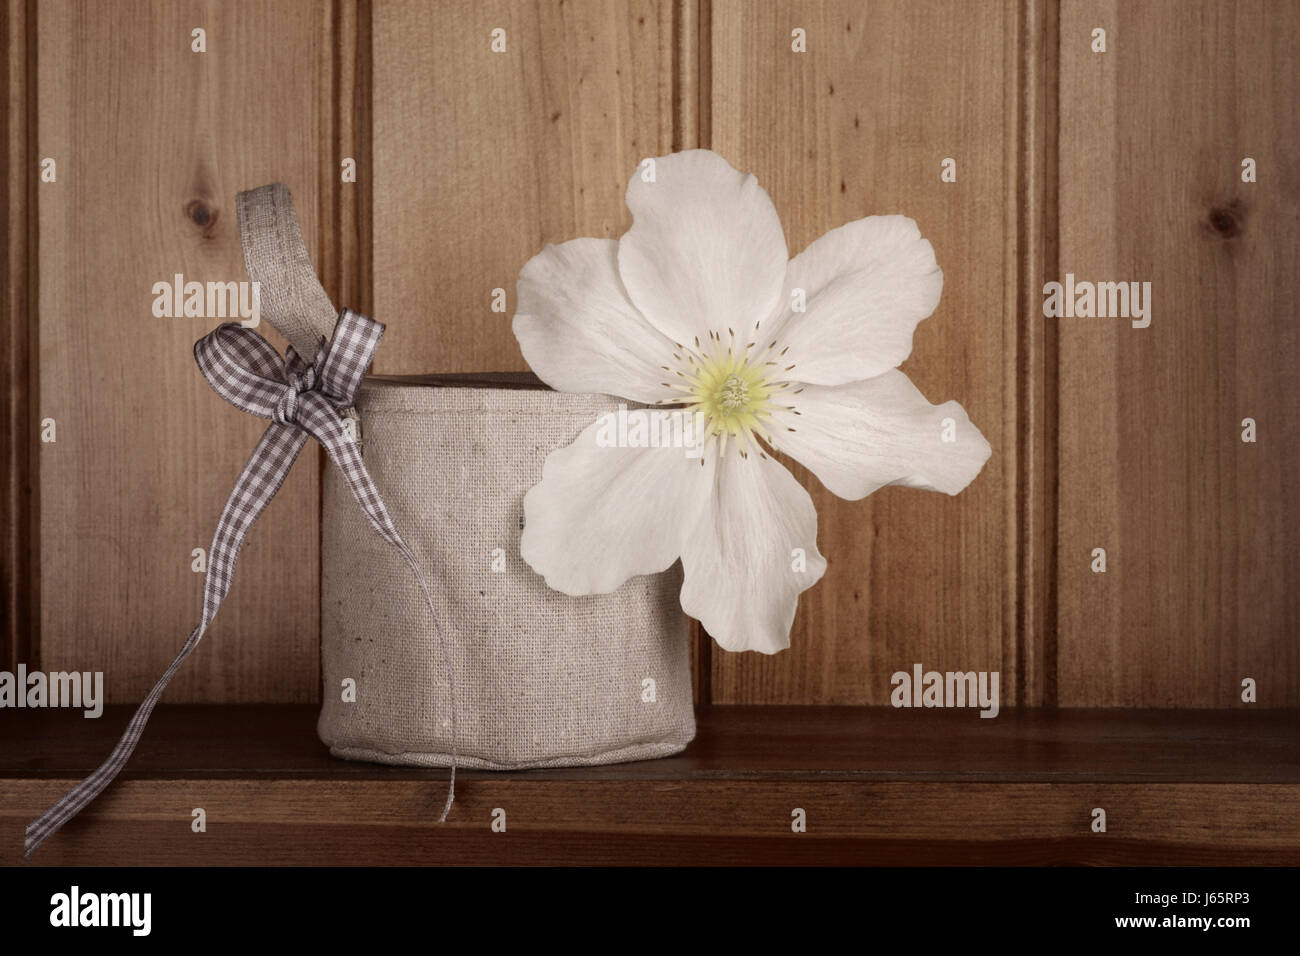 Atemberaubende weiße Clematis in einer Vase, bedeckt von einer hessischen Tasche mit karierte Schleife zu handhaben. Entsättigung Land rustikale Wirkung beantragt. Stockfoto